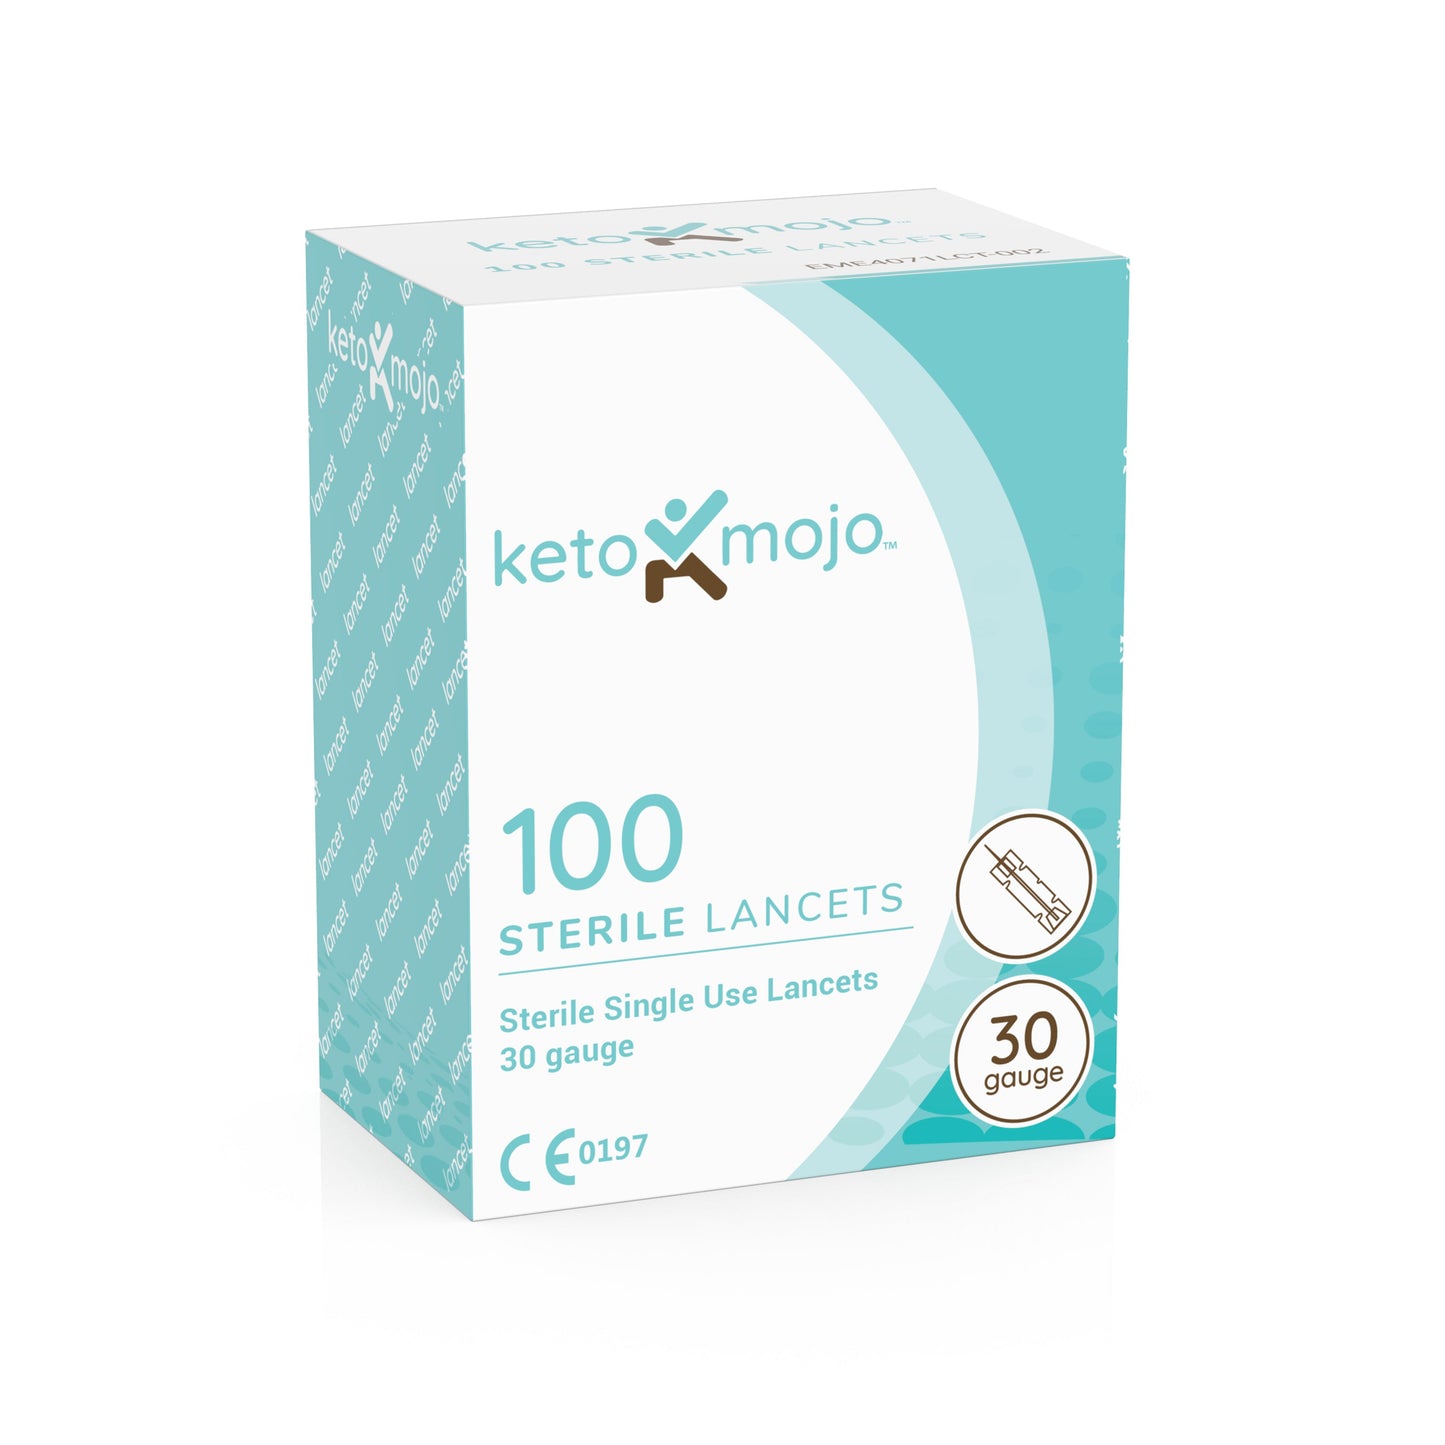 GKI-Bluetooth Blood Glucose & Ketone Meter Kit - PROMO BUNDLE (mmol)